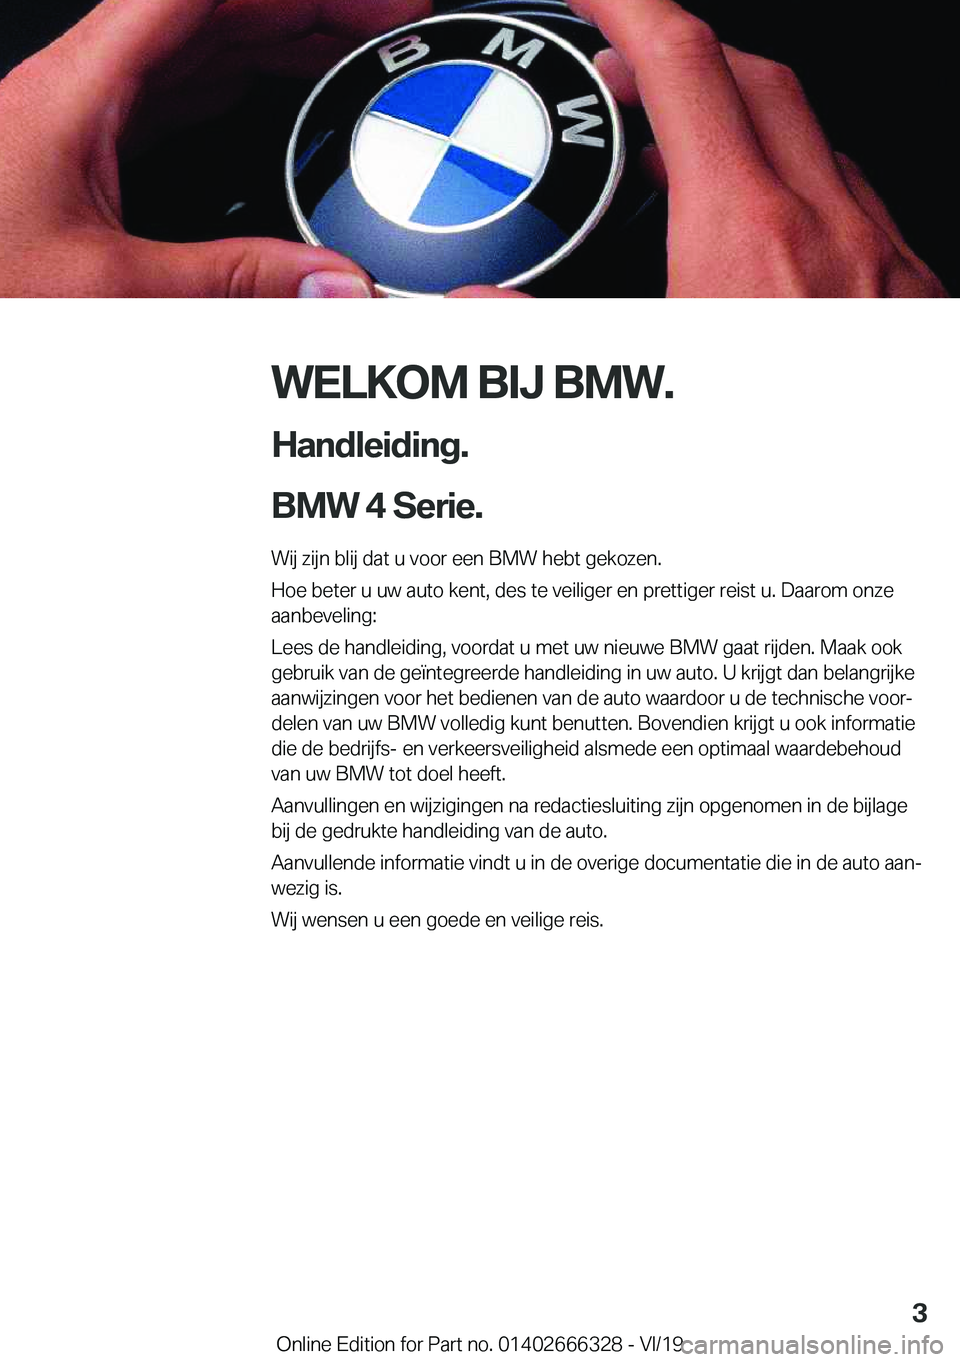 BMW 4 SERIES COUPE 2020  Instructieboekjes (in Dutch) �W�E�L�K�O�M��B�I�J��B�M�W�.
�H�a�n�d�l�e�i�d�i�n�g�.
�B�M�W��4��S�e�r�i�e�.� �W�i�j��z�i�j�n��b�l�i�j��d�a�t��u��v�o�o�r��e�e�n��B�M�W��h�e�b�t��g�e�k�o�z�e�n�.
�H�o�e��b�e�t�e�r��u�